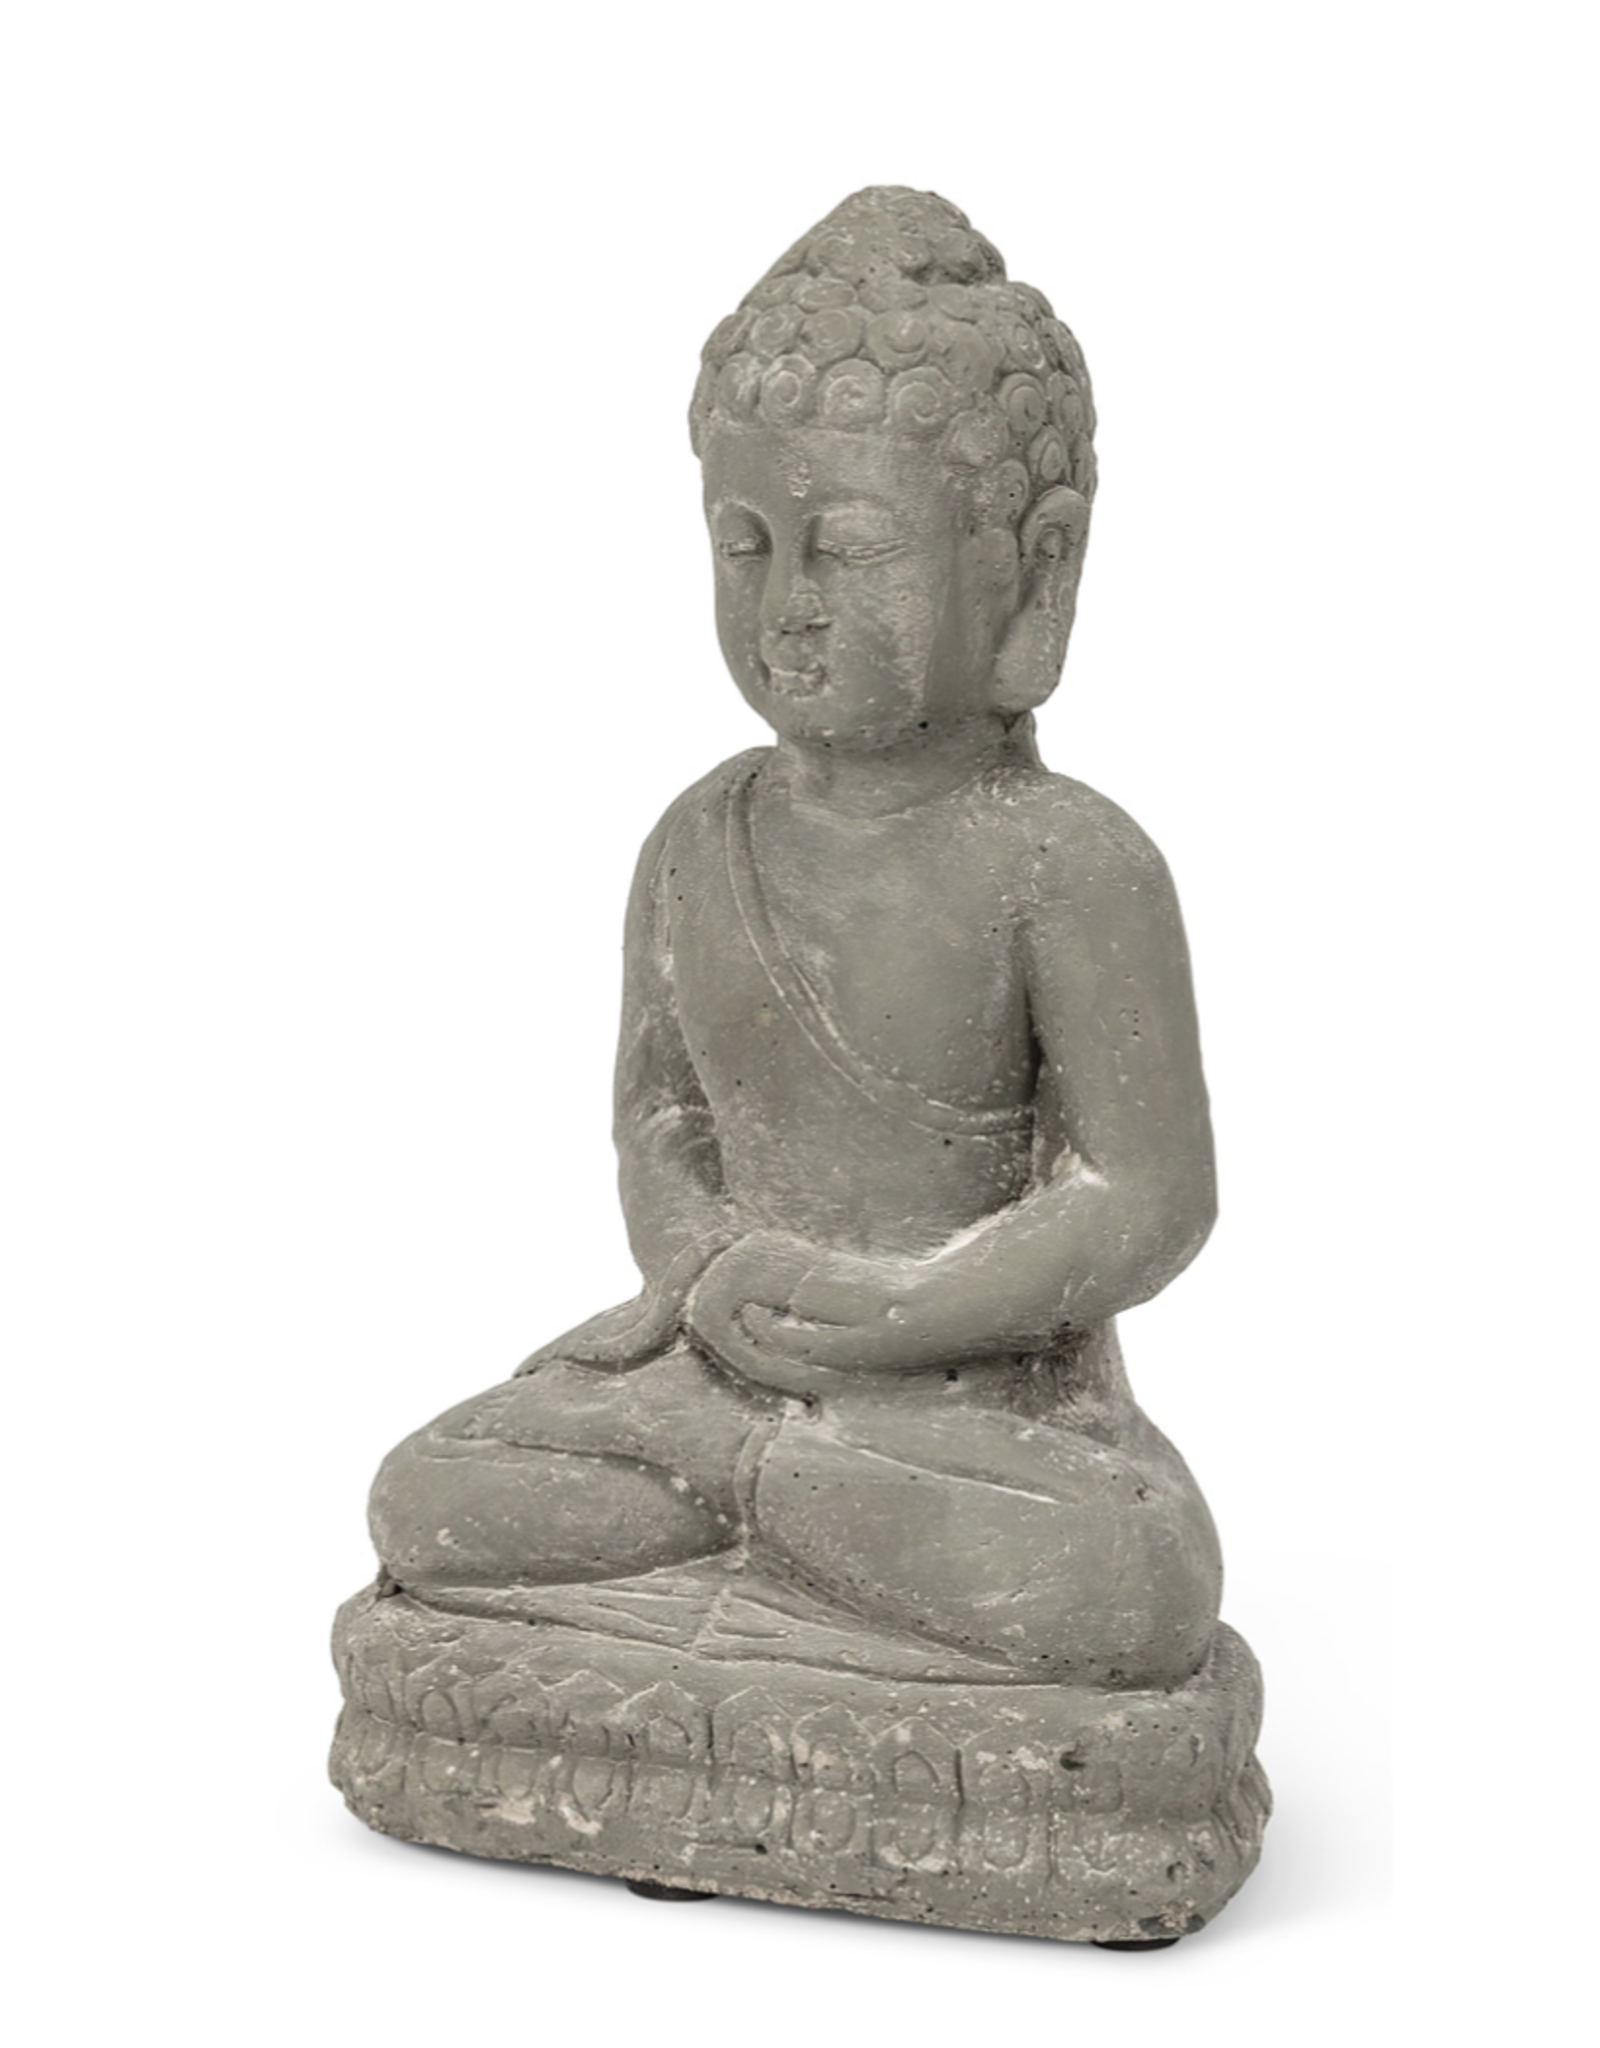 Small Sitting Buddha